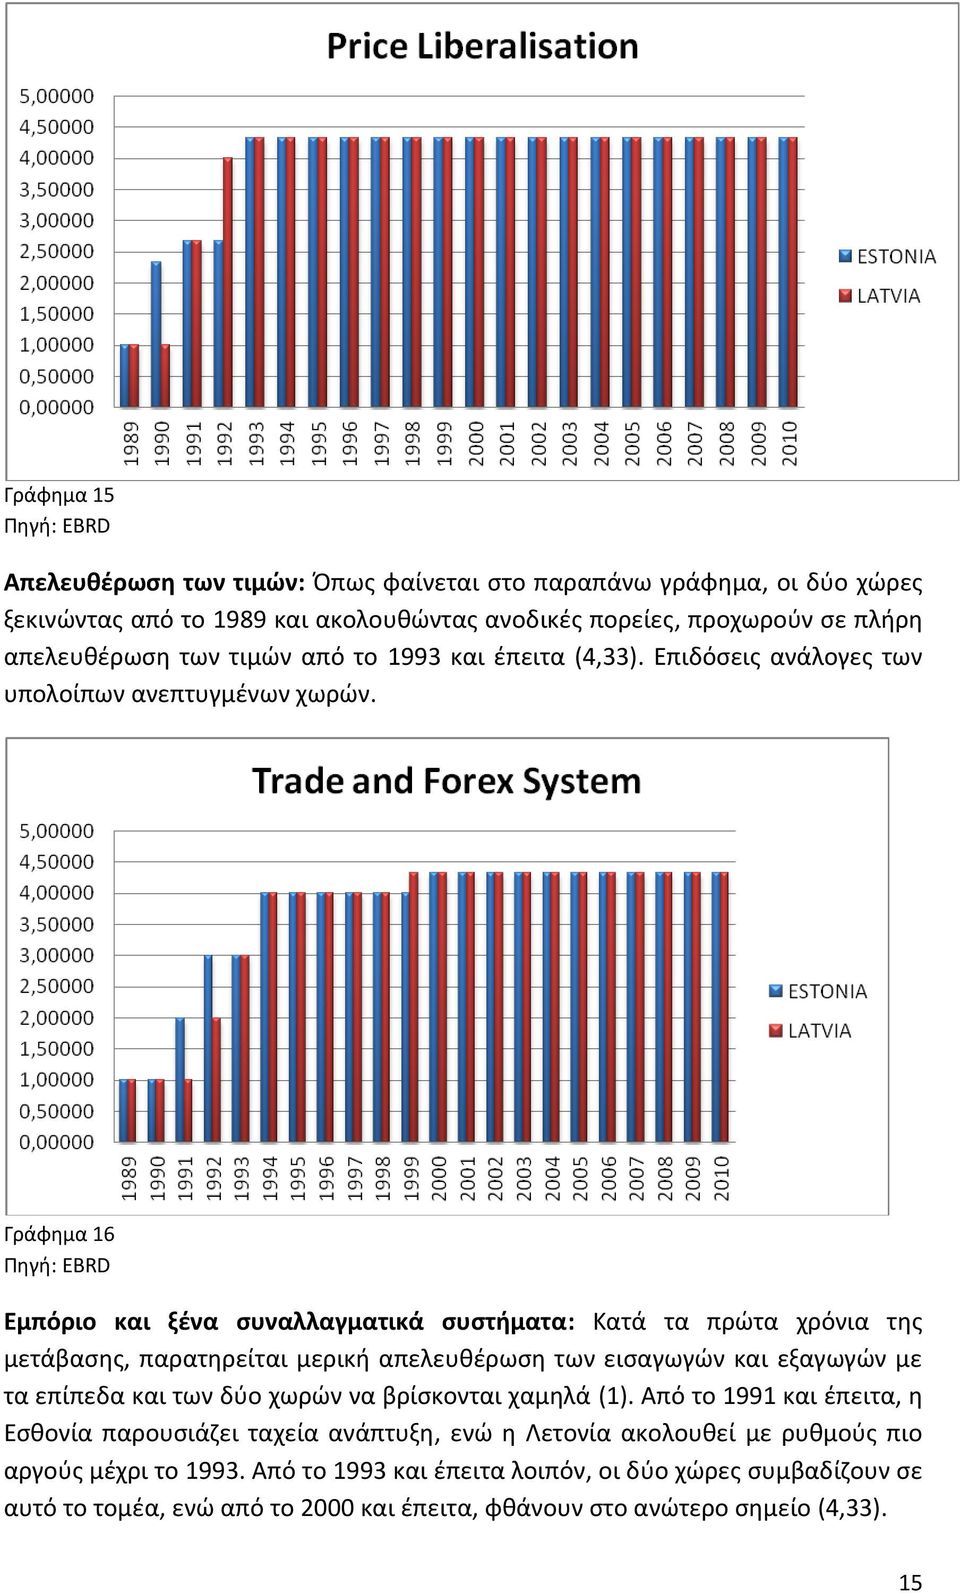 Γράφημα 16 Εμπόριο και ξένα συναλλαγματικά συστήματα: Κατά τα πρώτα χρόνια της μετάβασης, παρατηρείται μερική απελευθέρωση των εισαγωγών και εξαγωγών με τα επίπεδα και των δύο χωρών να